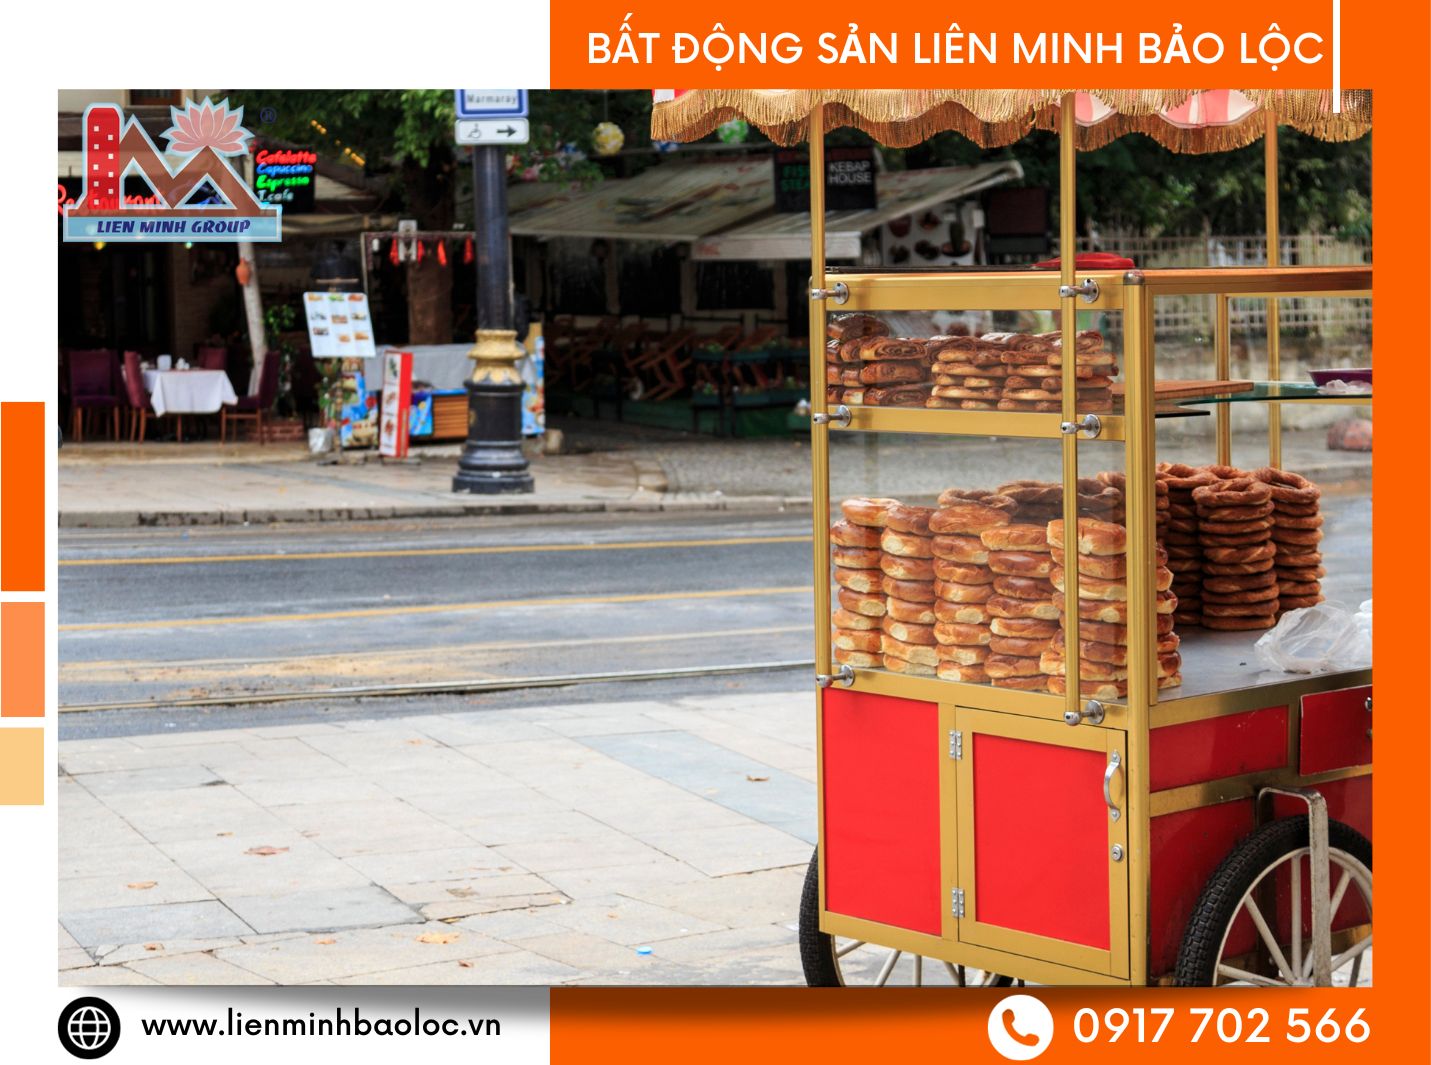 Cho thuê kiot bán đồ ăn sáng Lộc Sơn Bảo Lộc